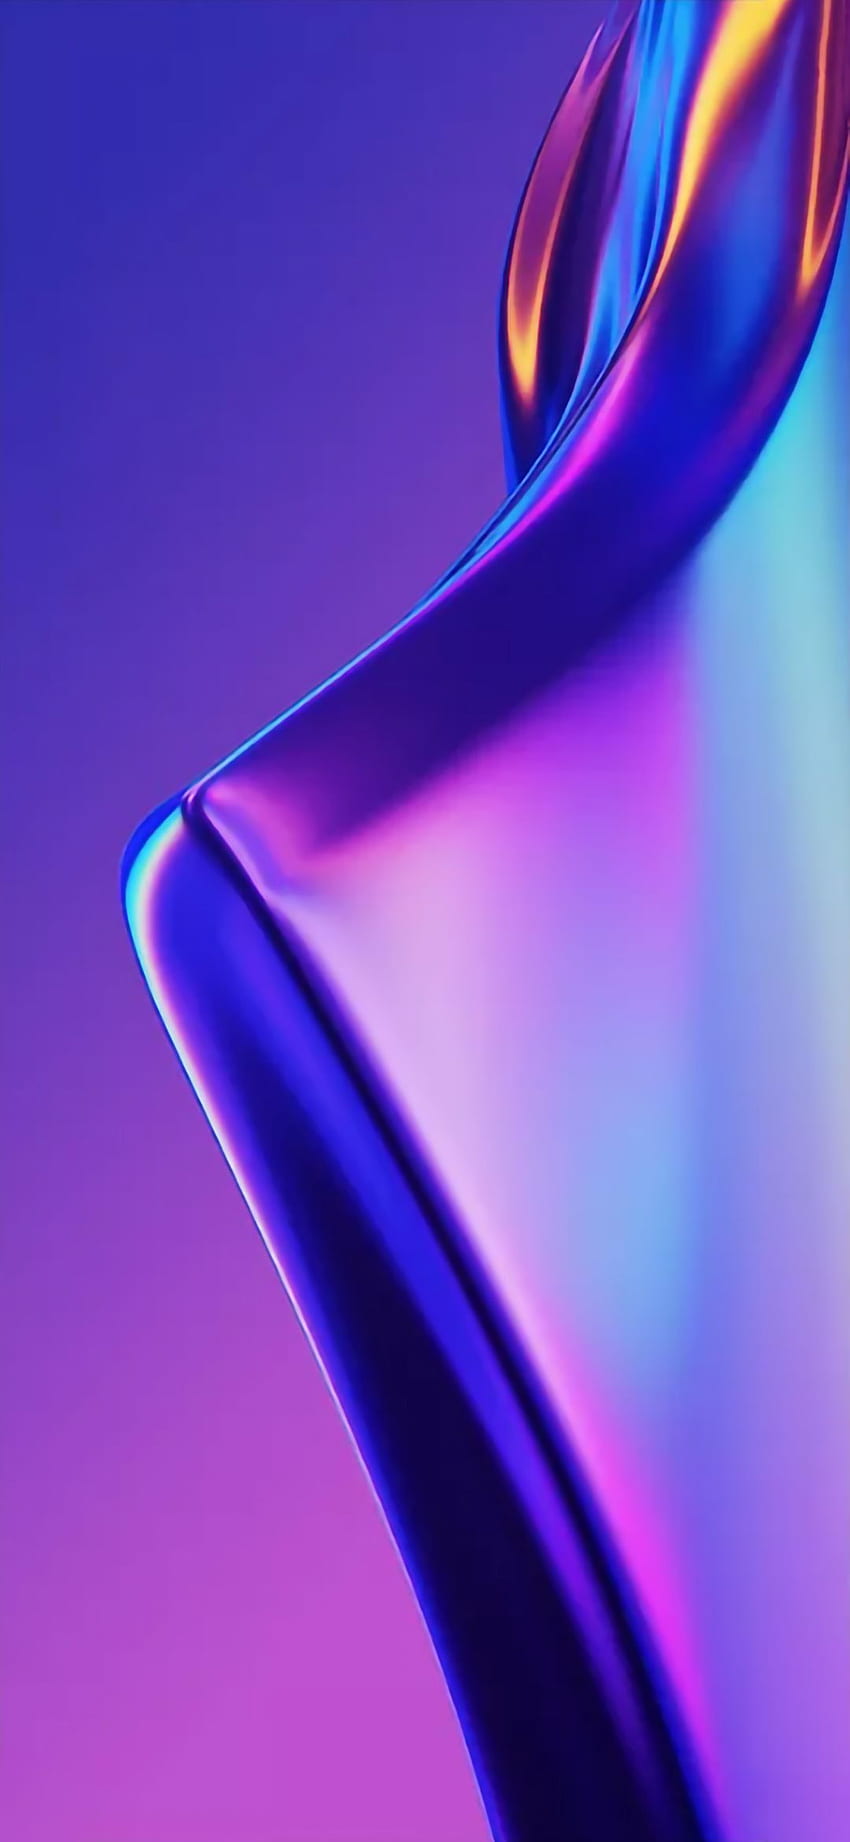 Oppo - HD phone wallpaper: Nếu bạn đang tìm kiếm những hình nền đẹp và sắc nét cho chiếc Oppo của mình, thì đây là điều bạn cần phải xem ngay. Với những hình ảnh độc đáo và chất lượng HD, chiếc điện thoại của bạn sẽ trở nên đẹp hơn bao giờ hết.